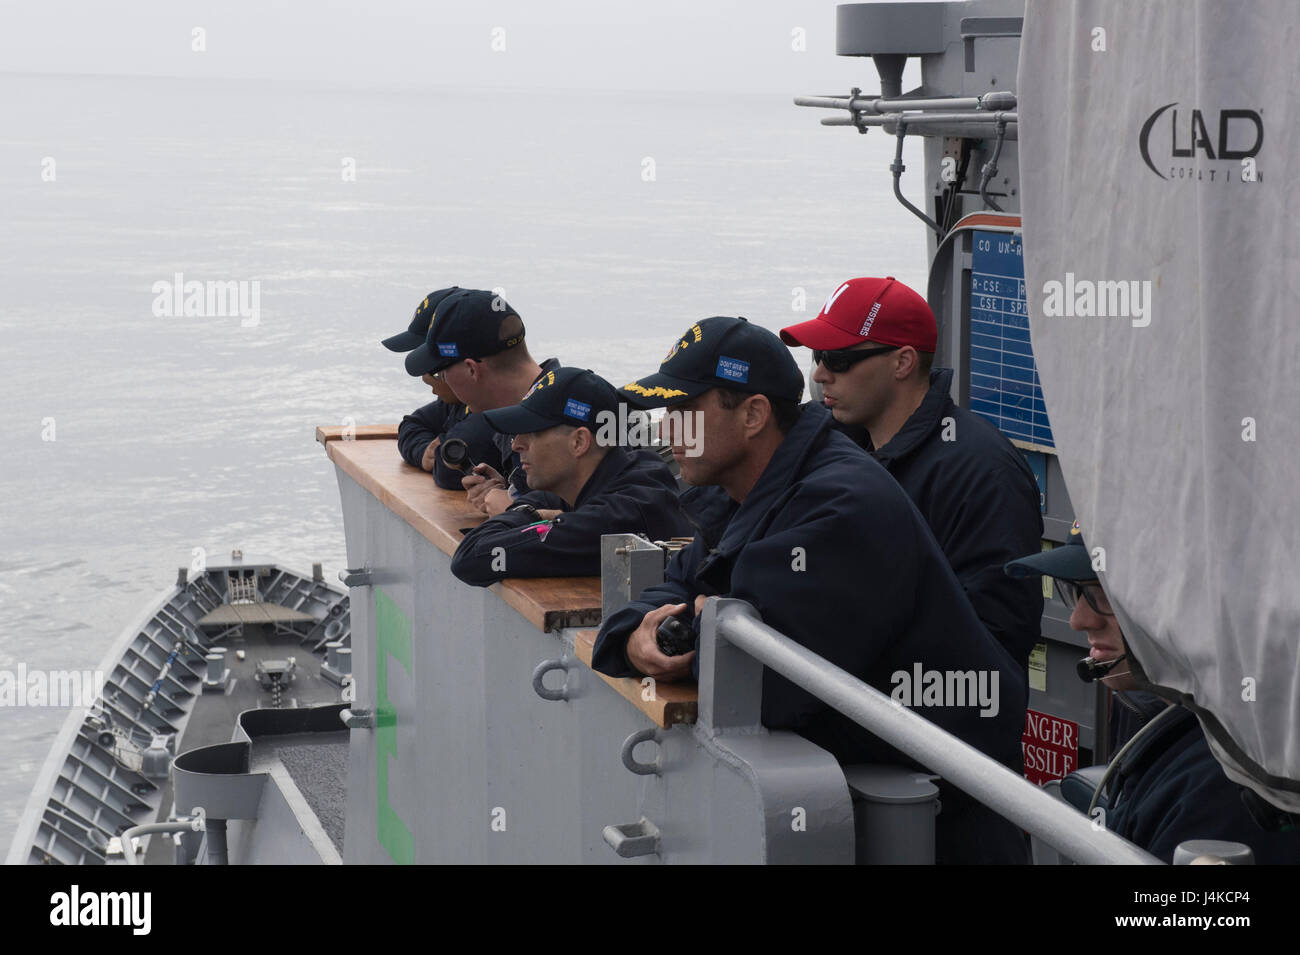 170510-N-MZ078-175 OCÉANO PACÍFICO (Mayo 10, 2016)- Comandante el Capitán Darren McPherson, desde Katy, Texas, y la tripulación supervisar una reposición en alta mar, a bordo de la clase Ticonderoga crucero de misiles guiados USS Lake Erie (CG 70). El lago Erie está actualmente en curso de implementación independiente a la 7ª y la 5ª Flota de EE.UU. áreas de operación en apoyo de operaciones de seguridad marítima y el teatro los esfuerzos de cooperación. (Ee.Uu. Navy photo by Mass Communication Specialist Seaman Lucas T. Hans/liberado) Foto de stock